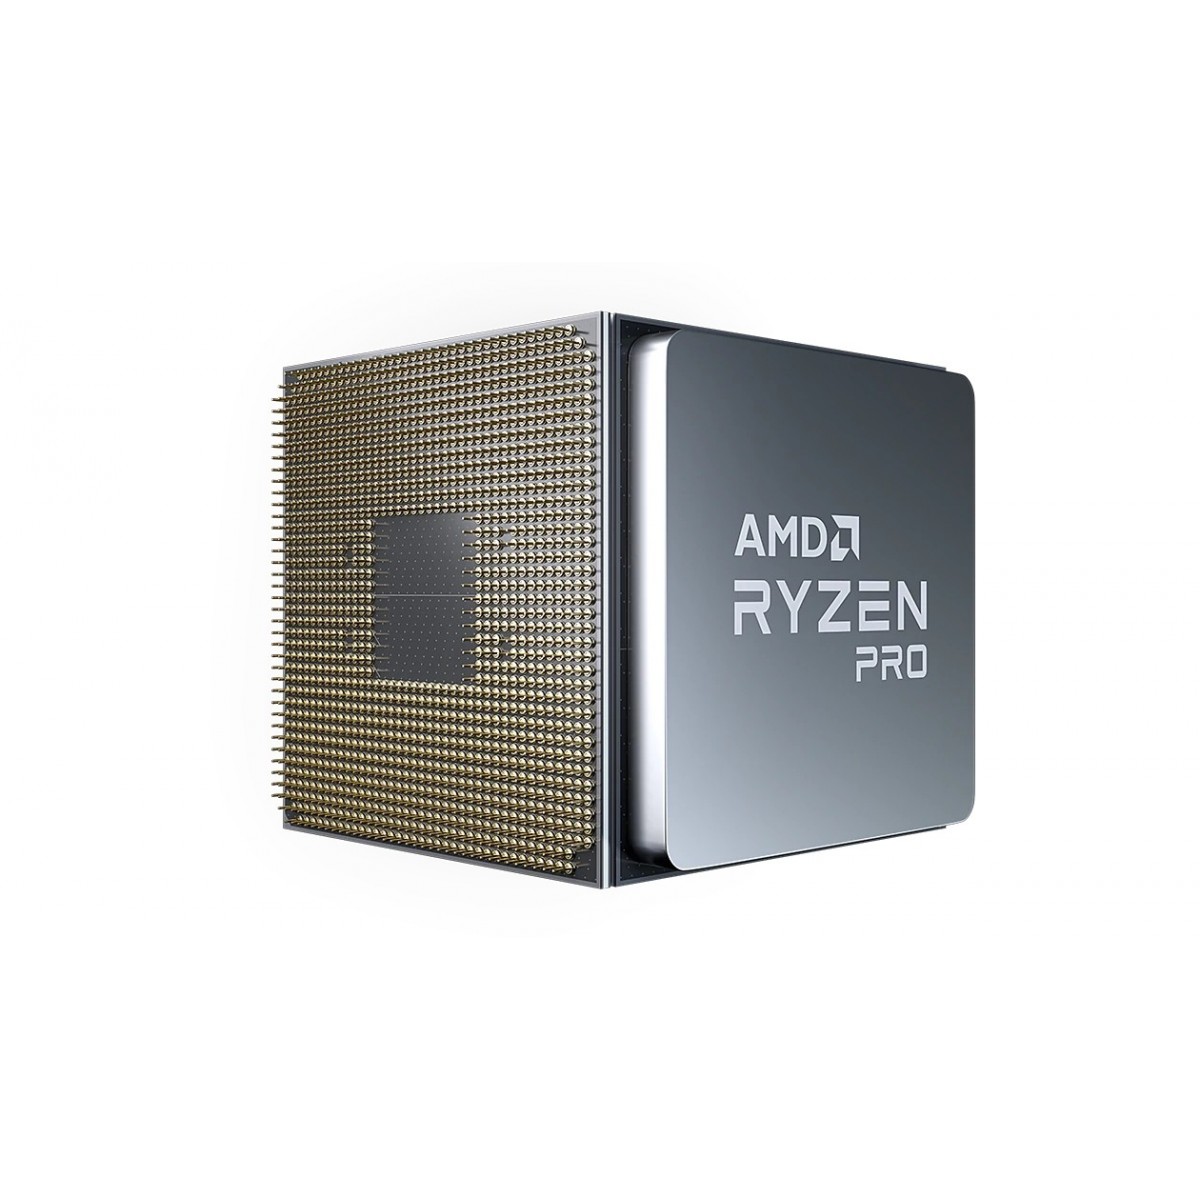 AMD Ryzen 3 PRO 4350G - AMD Ryzen 3 PRO - Socket AM4 - PC - 7 nm - AMD - 3.8 GHz